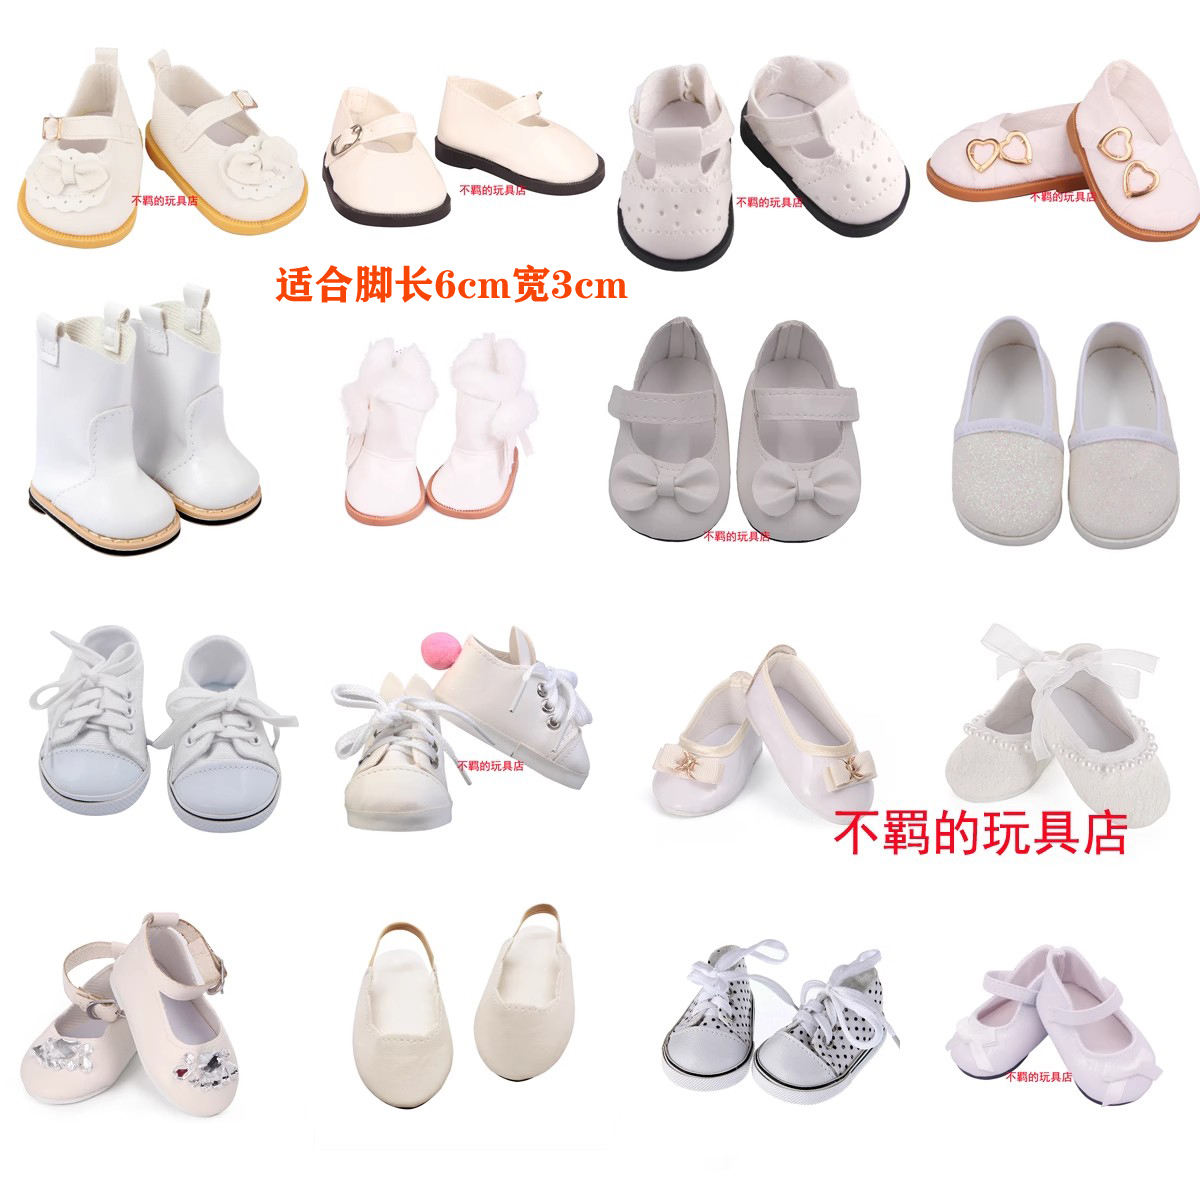 白色鞋子 皮鞋 靴子 板鞋 娃娃配件适合18寸美国女孩AG 46cm偶季